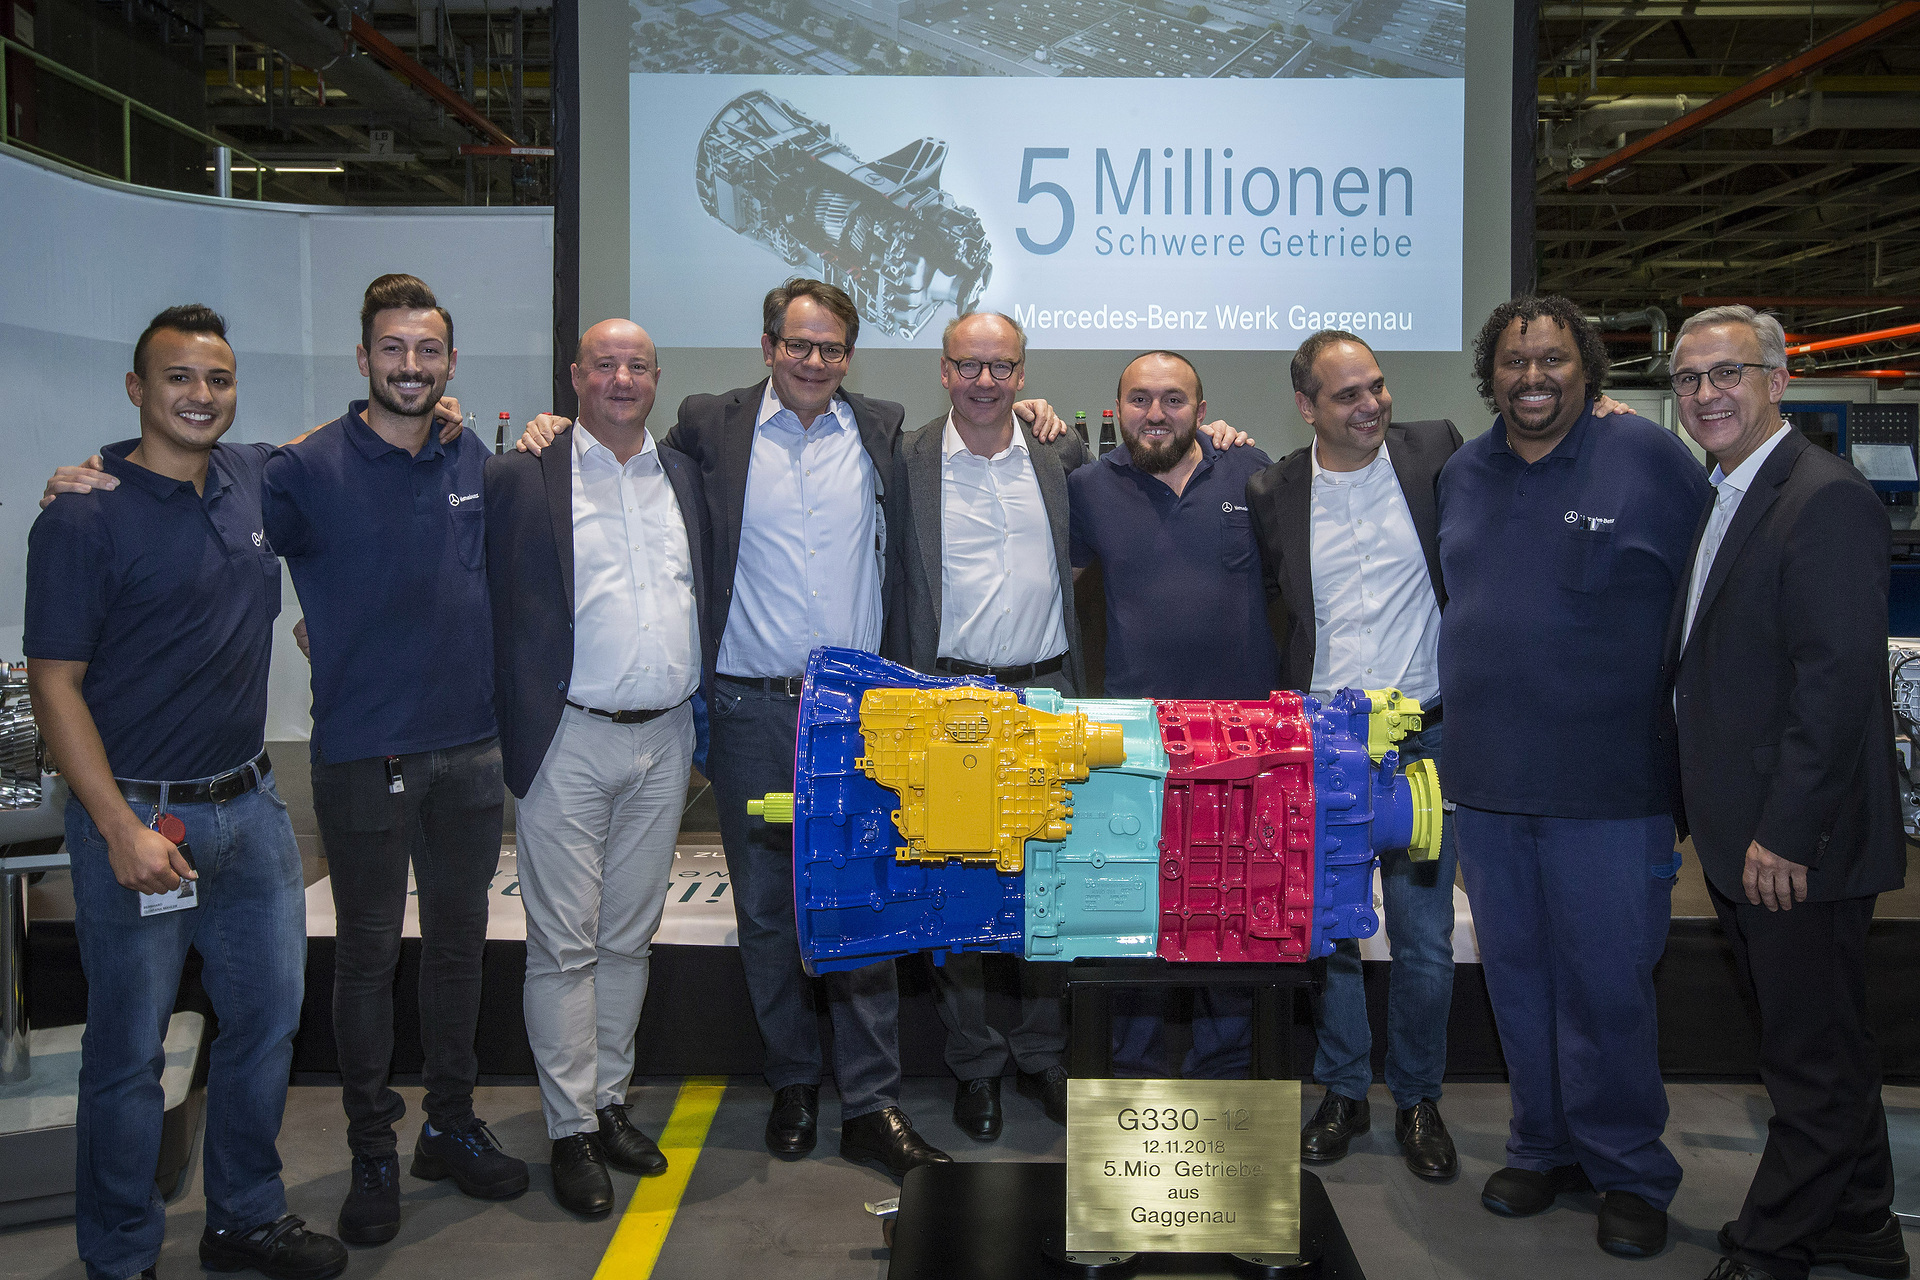 Fünf-Millionen-Marke geknackt: Mercedes-Benz Werk Gaggenau feiert Produktionsjubiläum für mittelschwere und schwere Schaltgetriebe